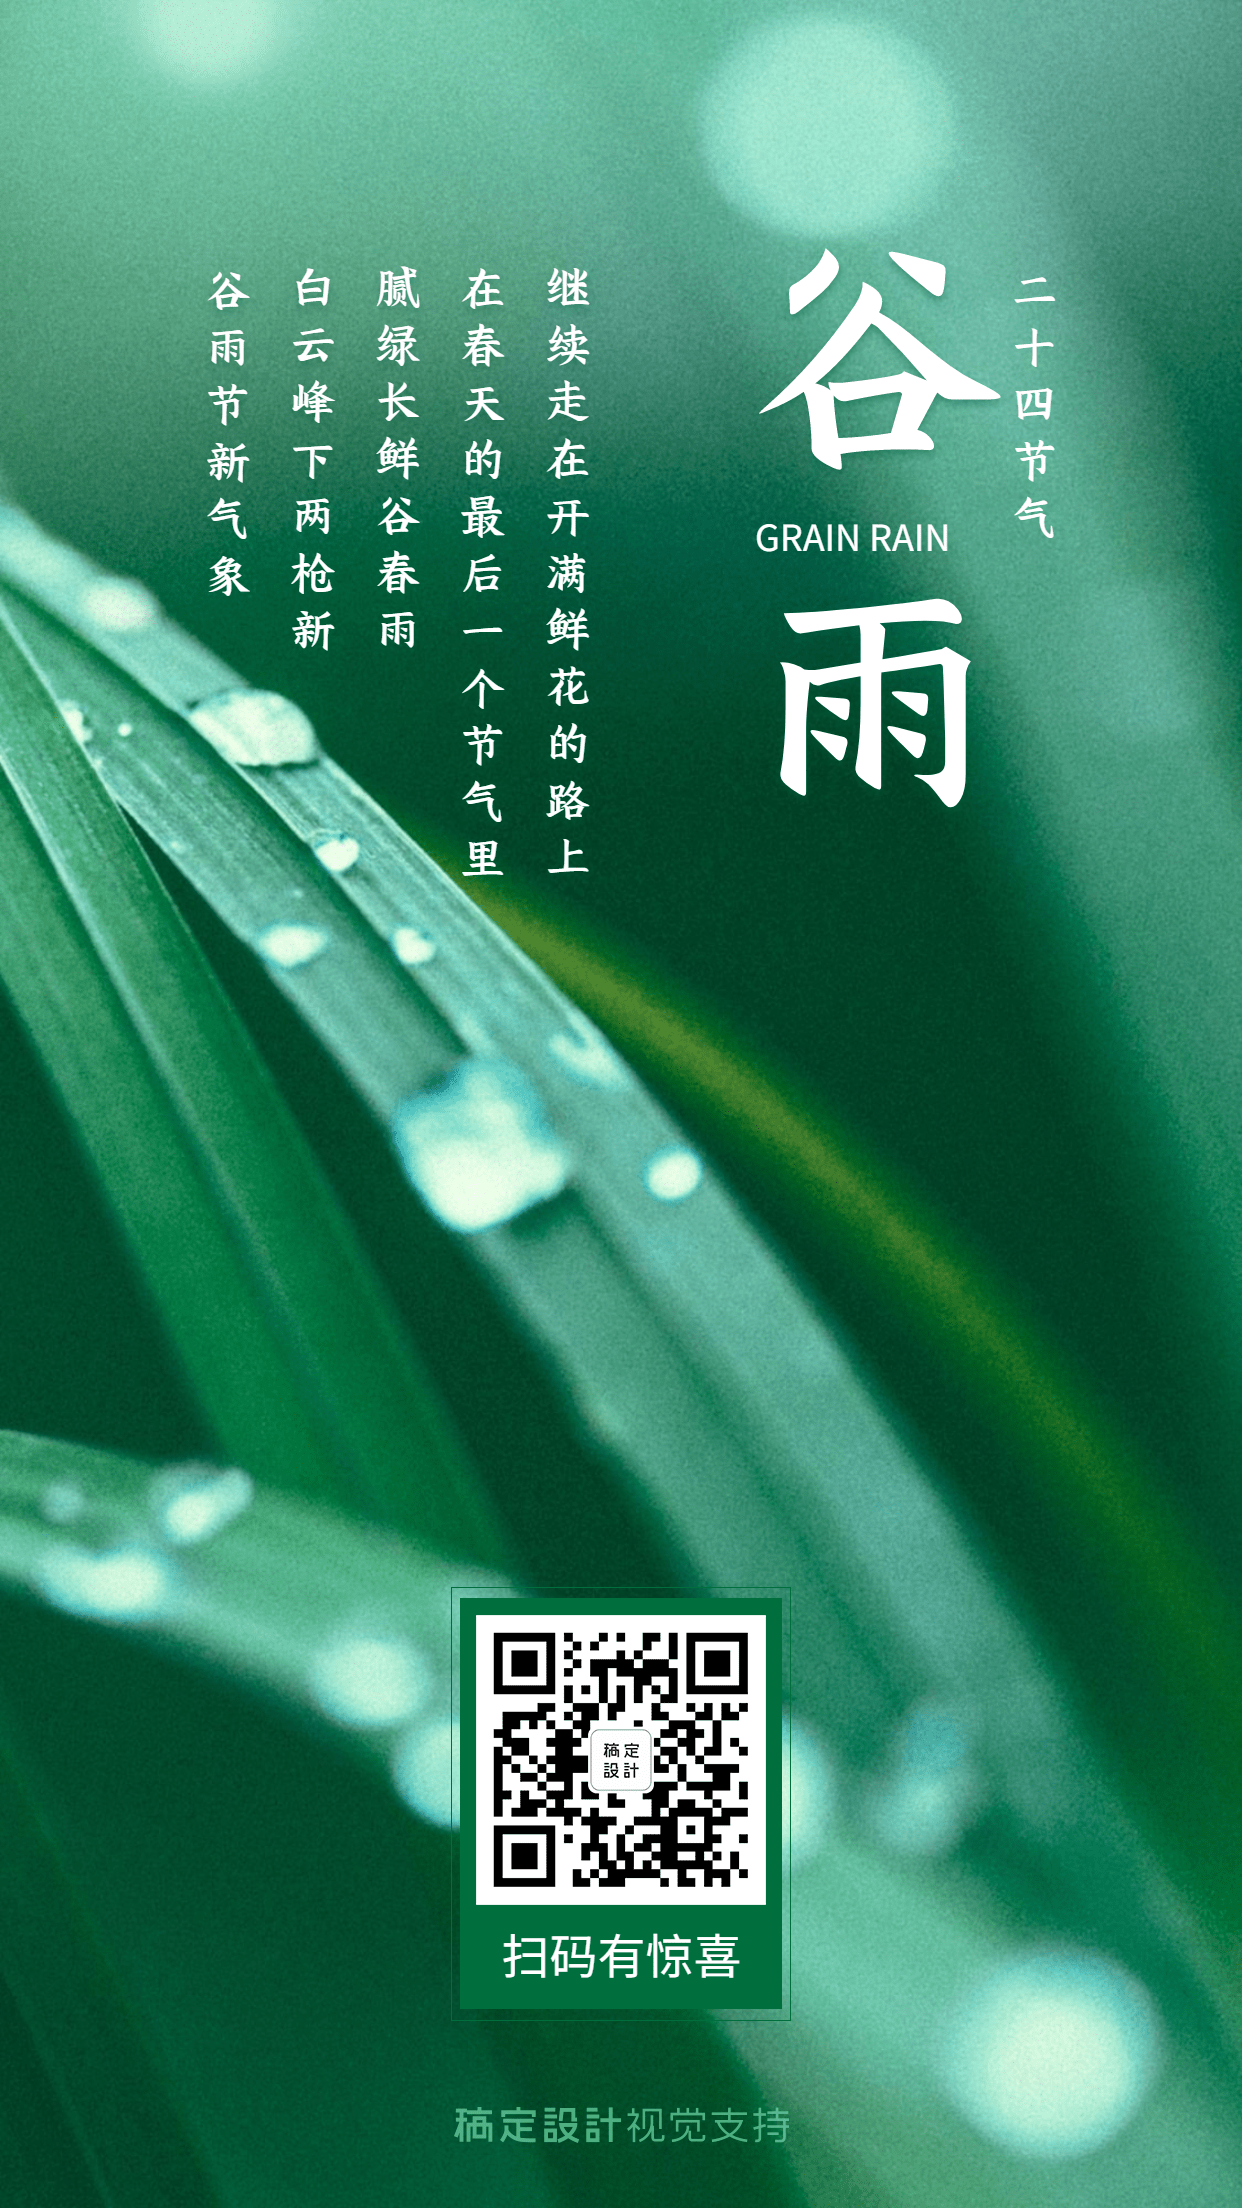 谷雨节气问候祝福宣传海报